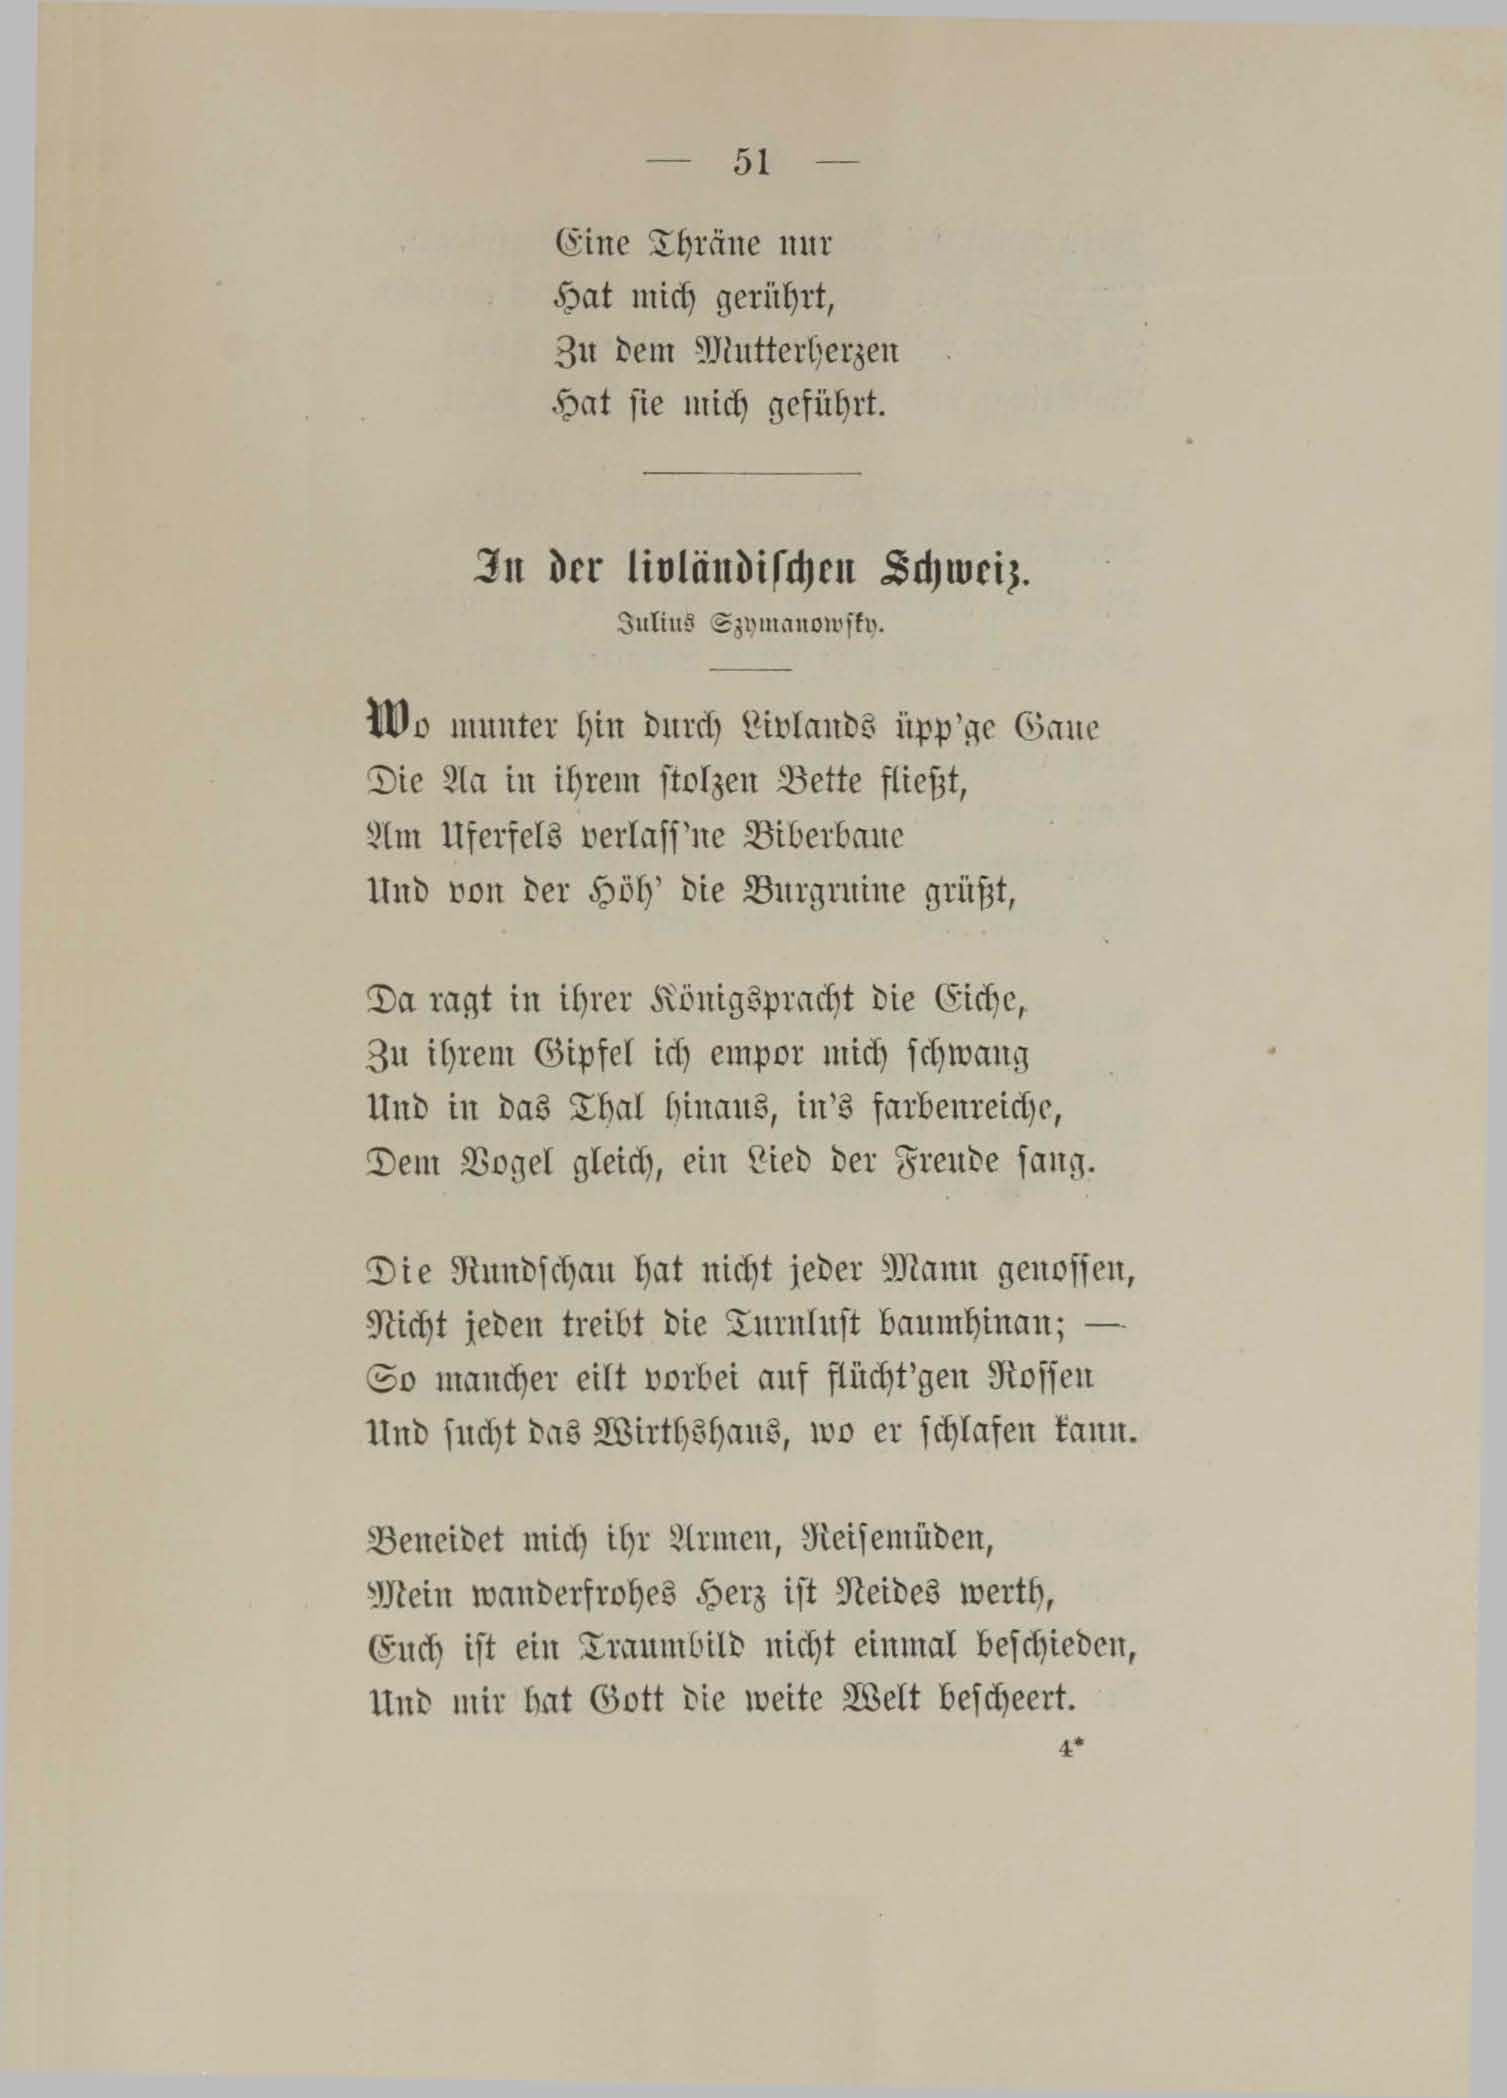 In der livländischen Schweiz (1890) | 1. (51) Main body of text